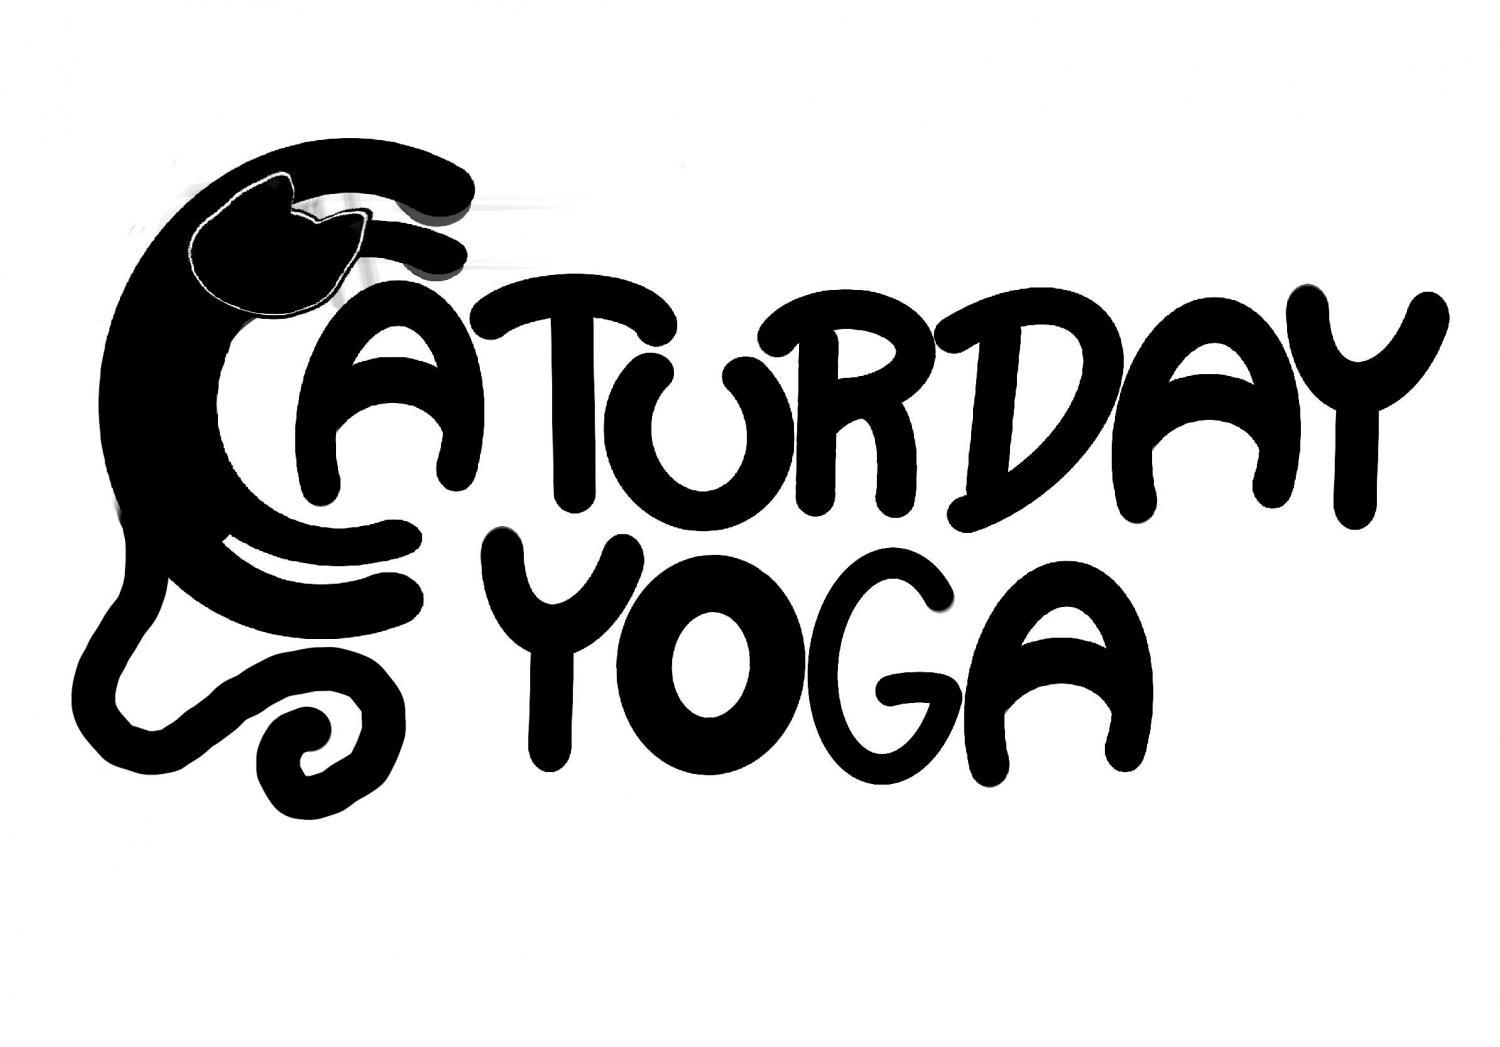 Caturday Yoga
Sat Dec 31, 9:00 AM - Sat Dec 31, 10:00 AM
in 57 days